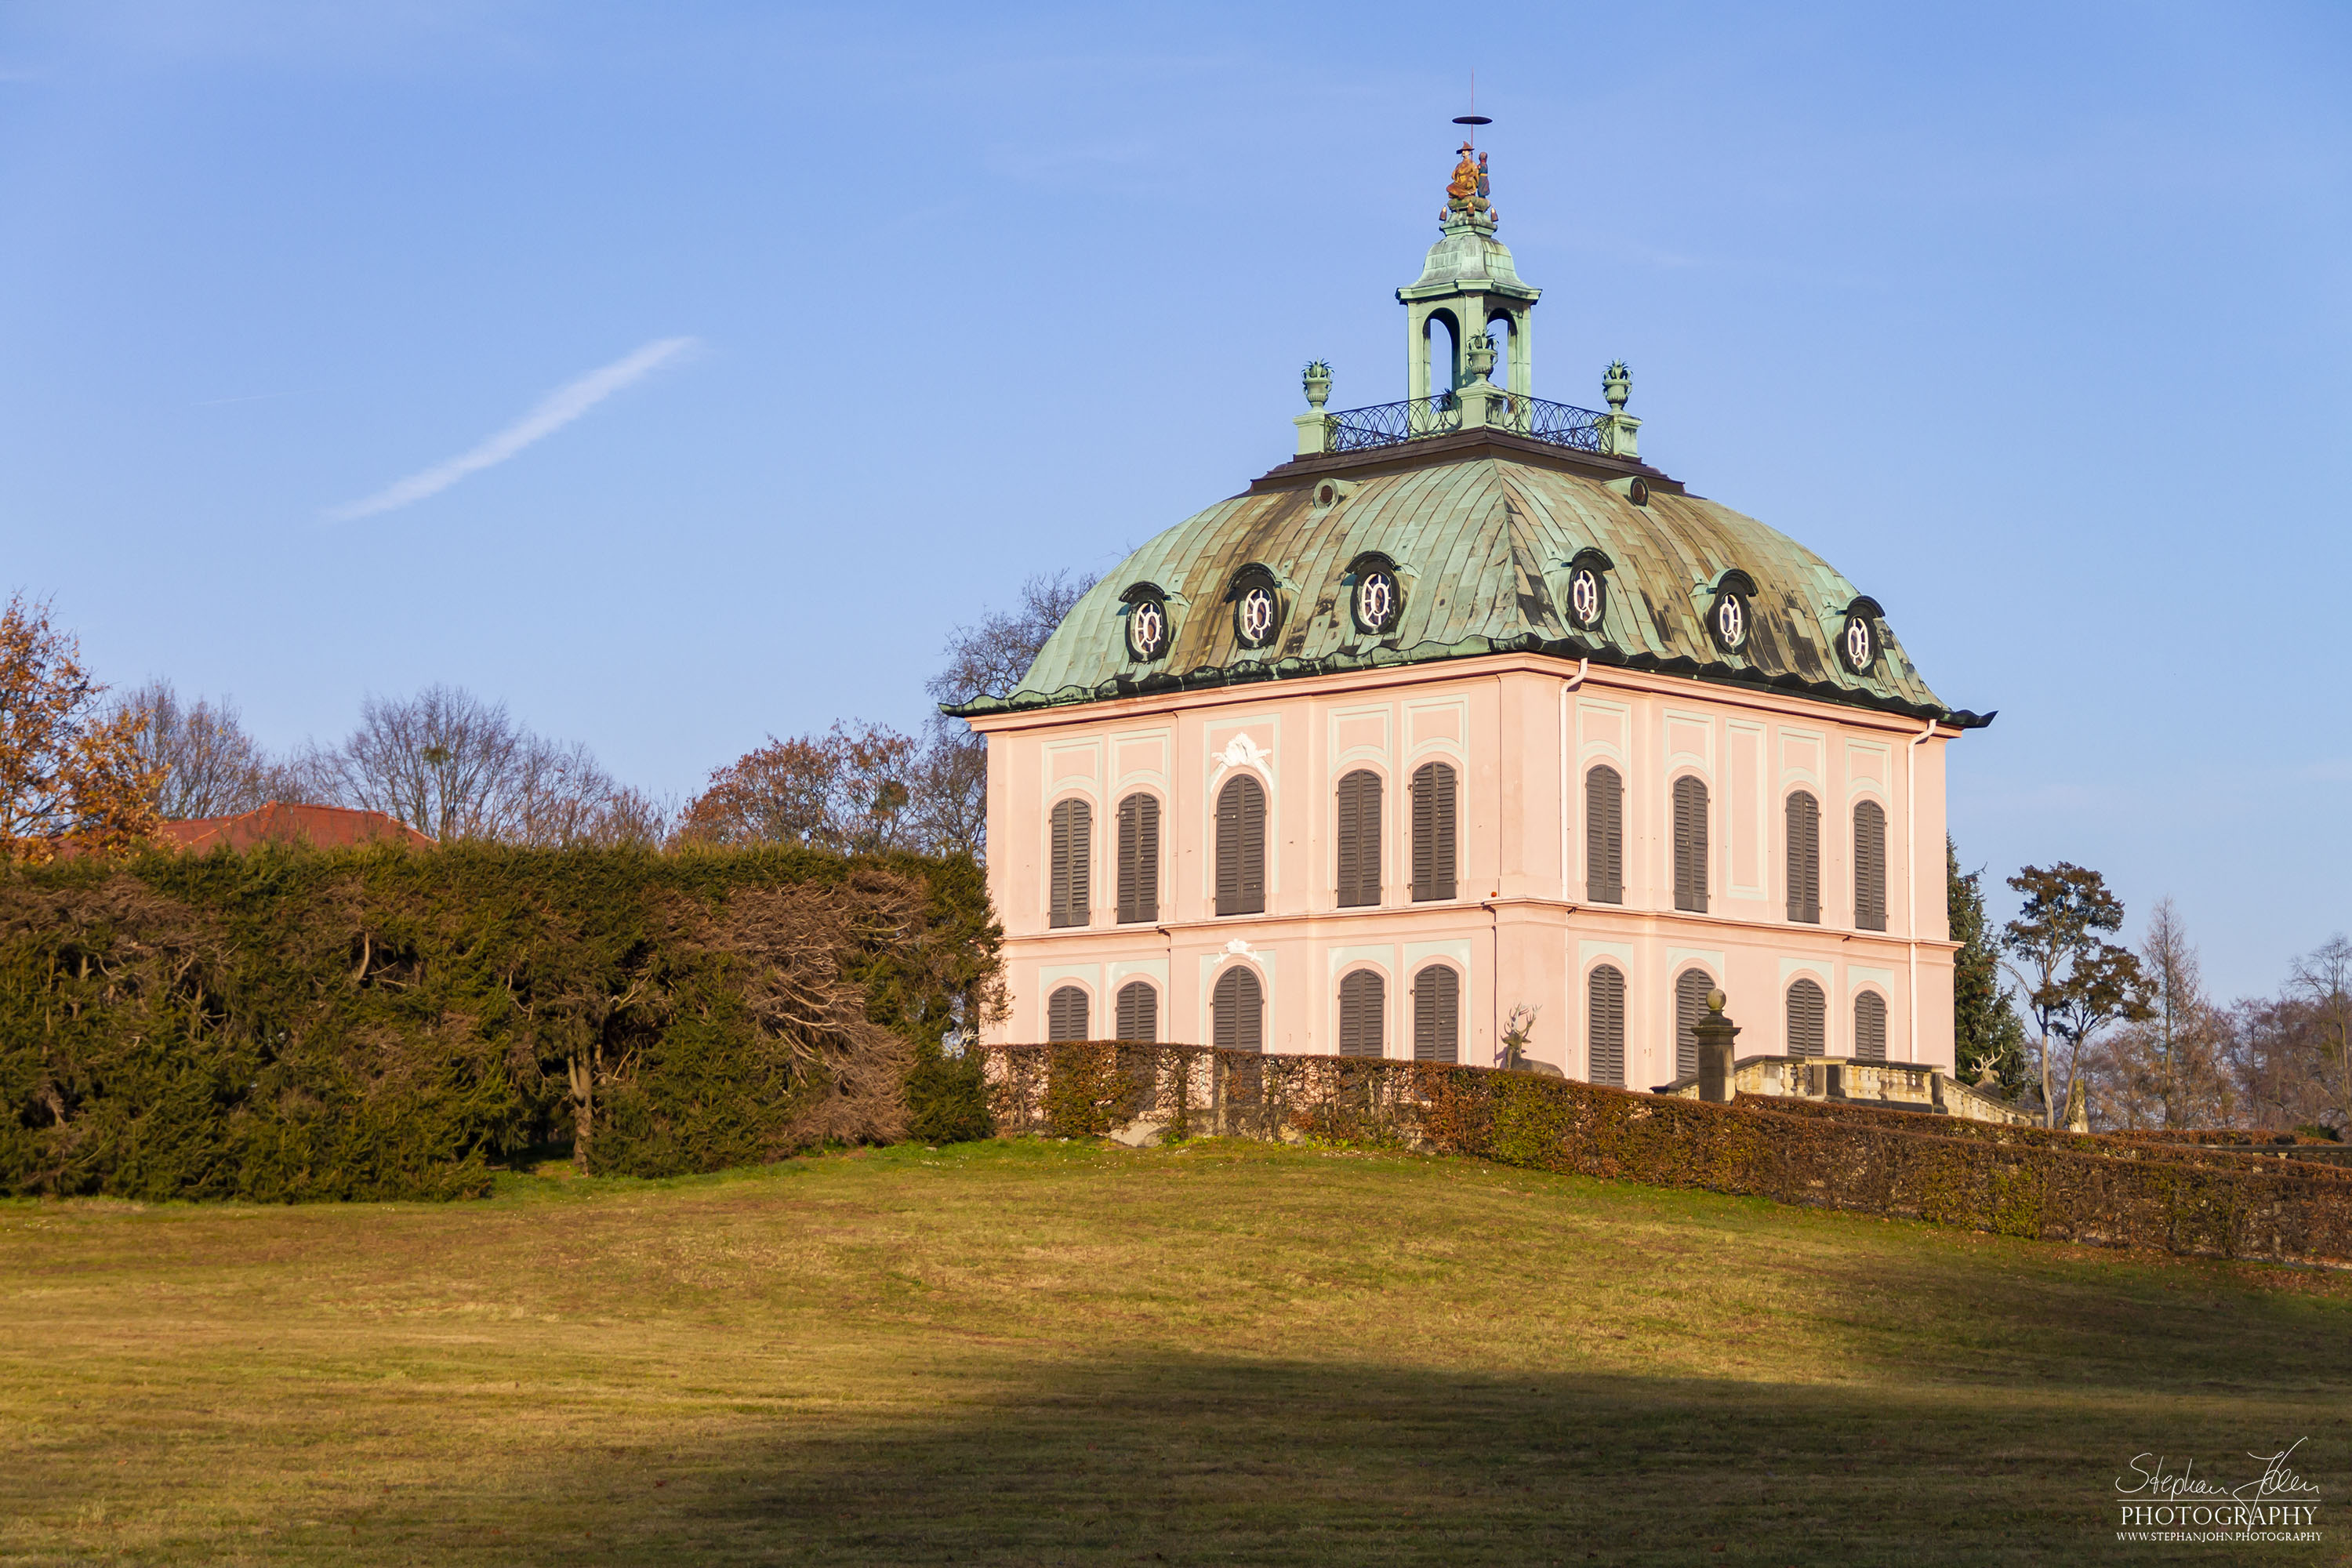 <p>Das Fasanenschlösschen steht in der Gemeinde Moritzburg bei Dresden. Es befindet sich in der 1728 angelegten Fasanerie des Schlossparks von Moritzburg. Das Schlösschen steht am Niederen Großteich Bärnsdorf nahe dem Leuchtturm Moritzburg</p>